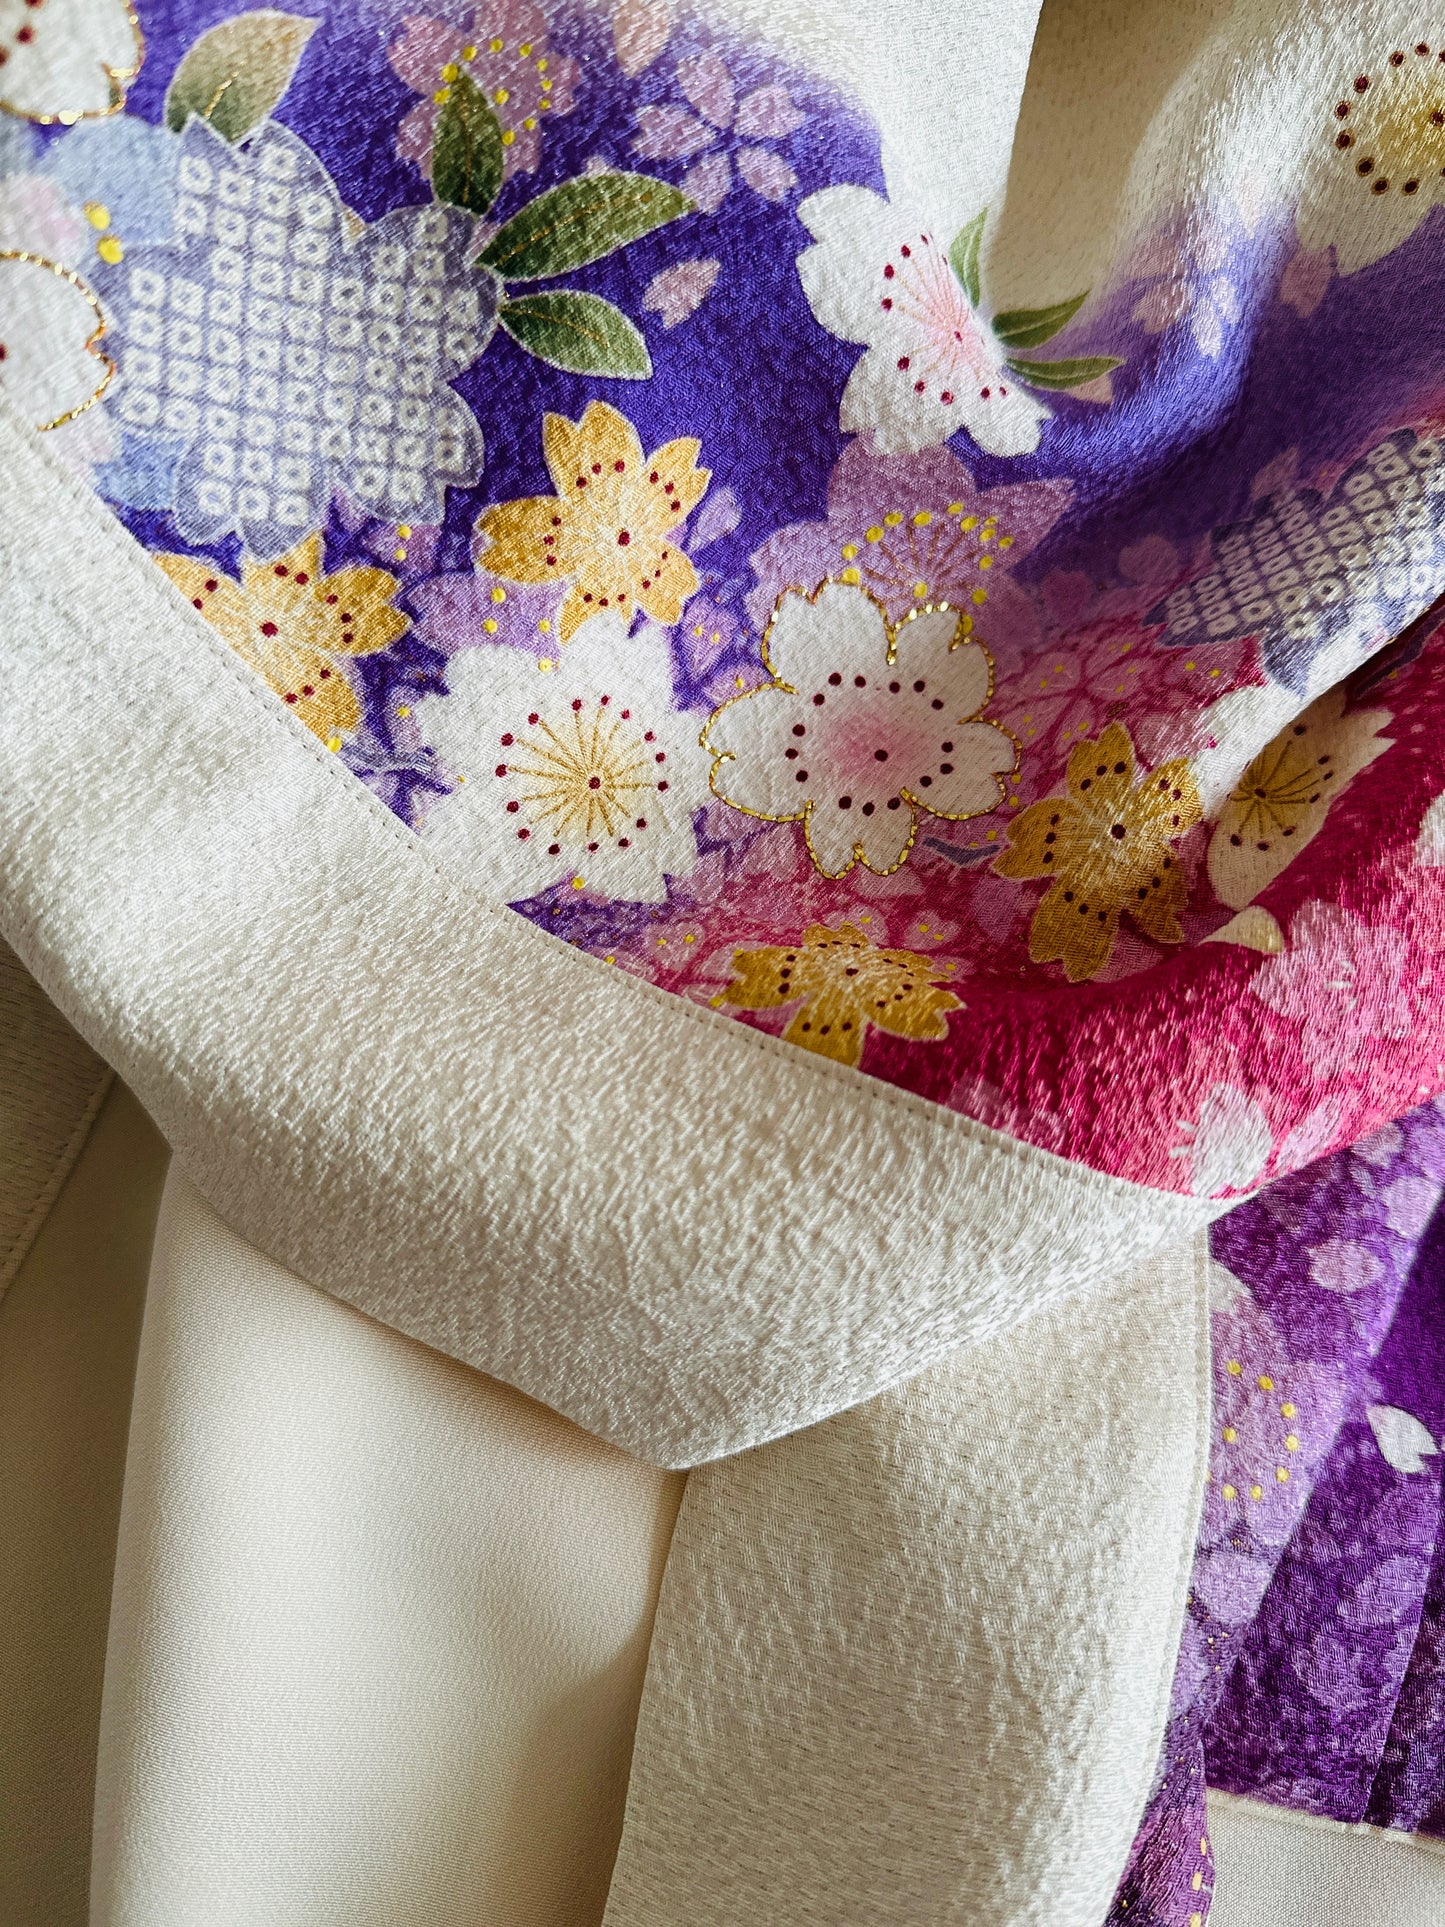 【Blanc, fleur de cerisier】 veste heureuse ＜ Excellent ・ Silk ＞ pour les hommes, pour les femmes, le kimono japonais, les vêtements unisexais japonais, unisexe, cadeaux japonais, designs originaux